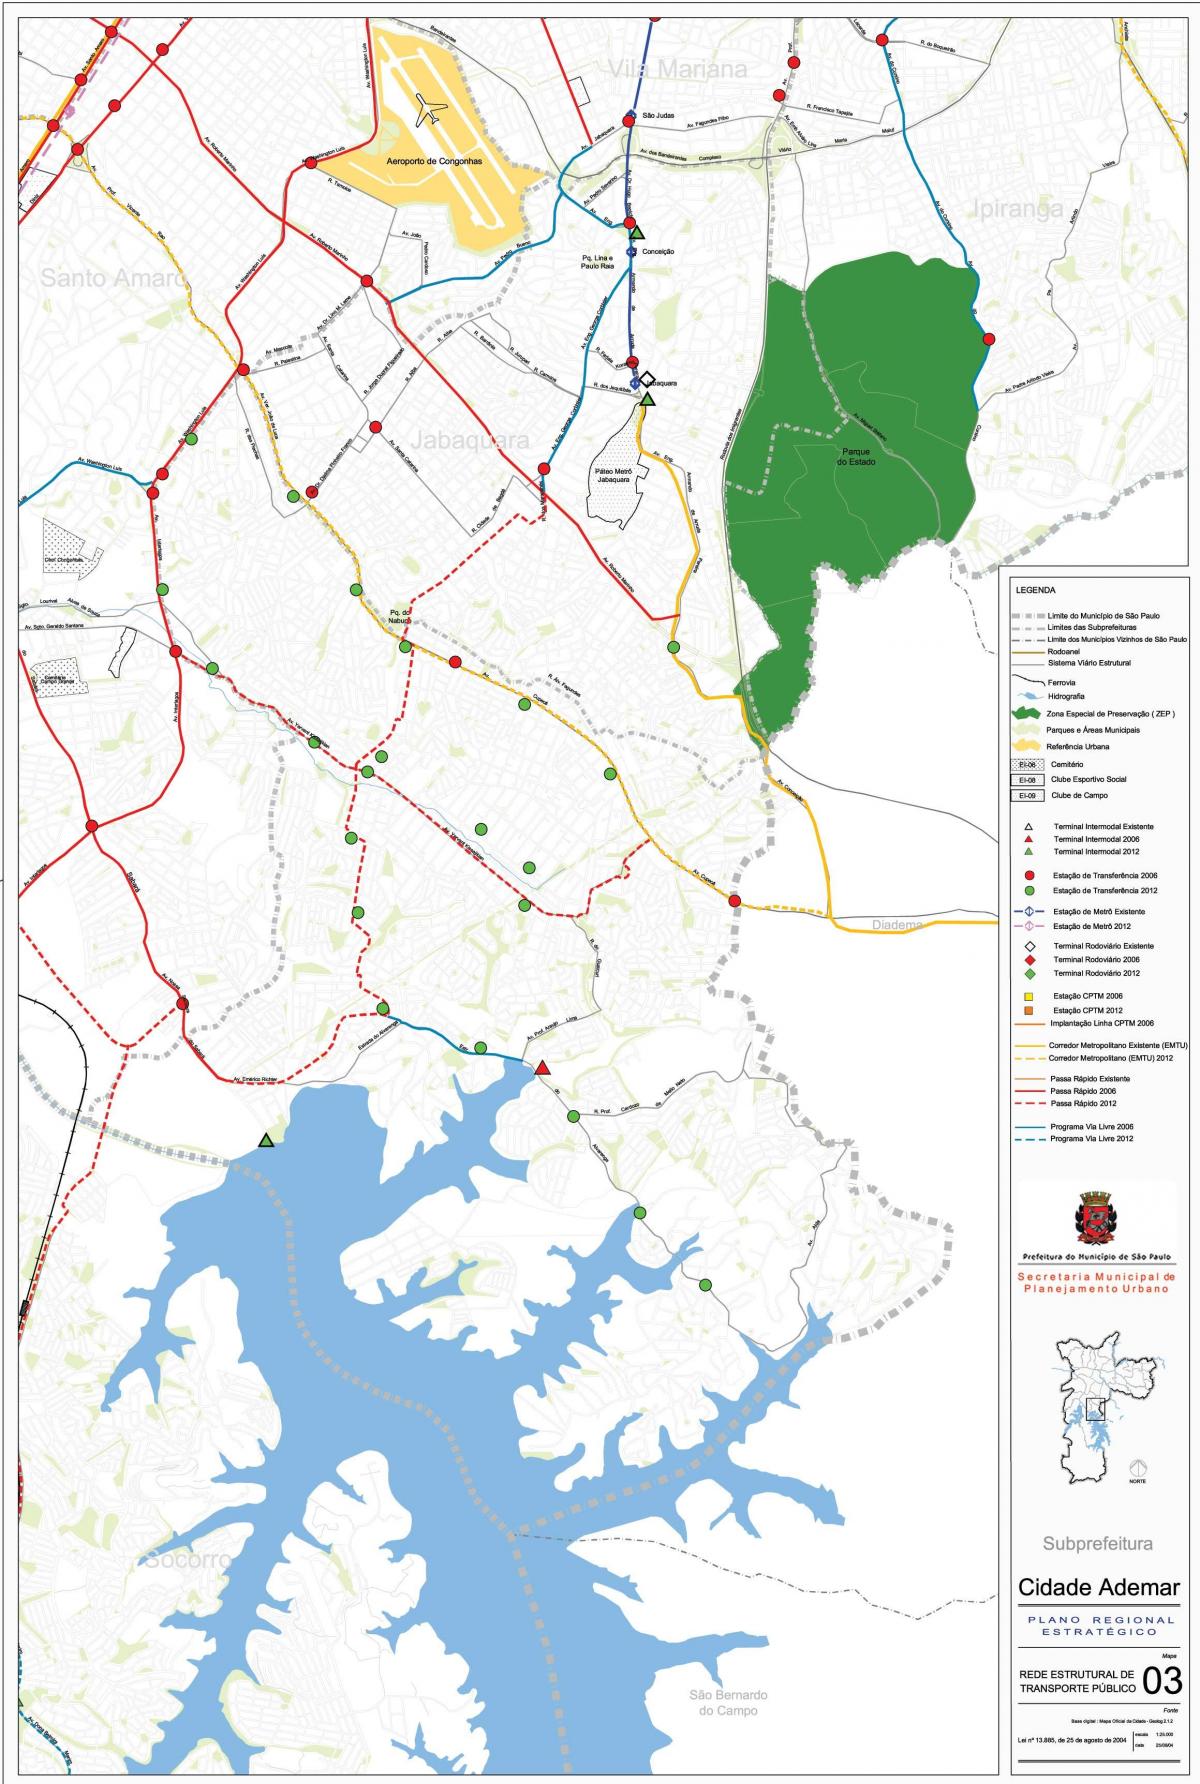 מפה של Cidade Ademar סאו פאולו - תחבורה ציבורית